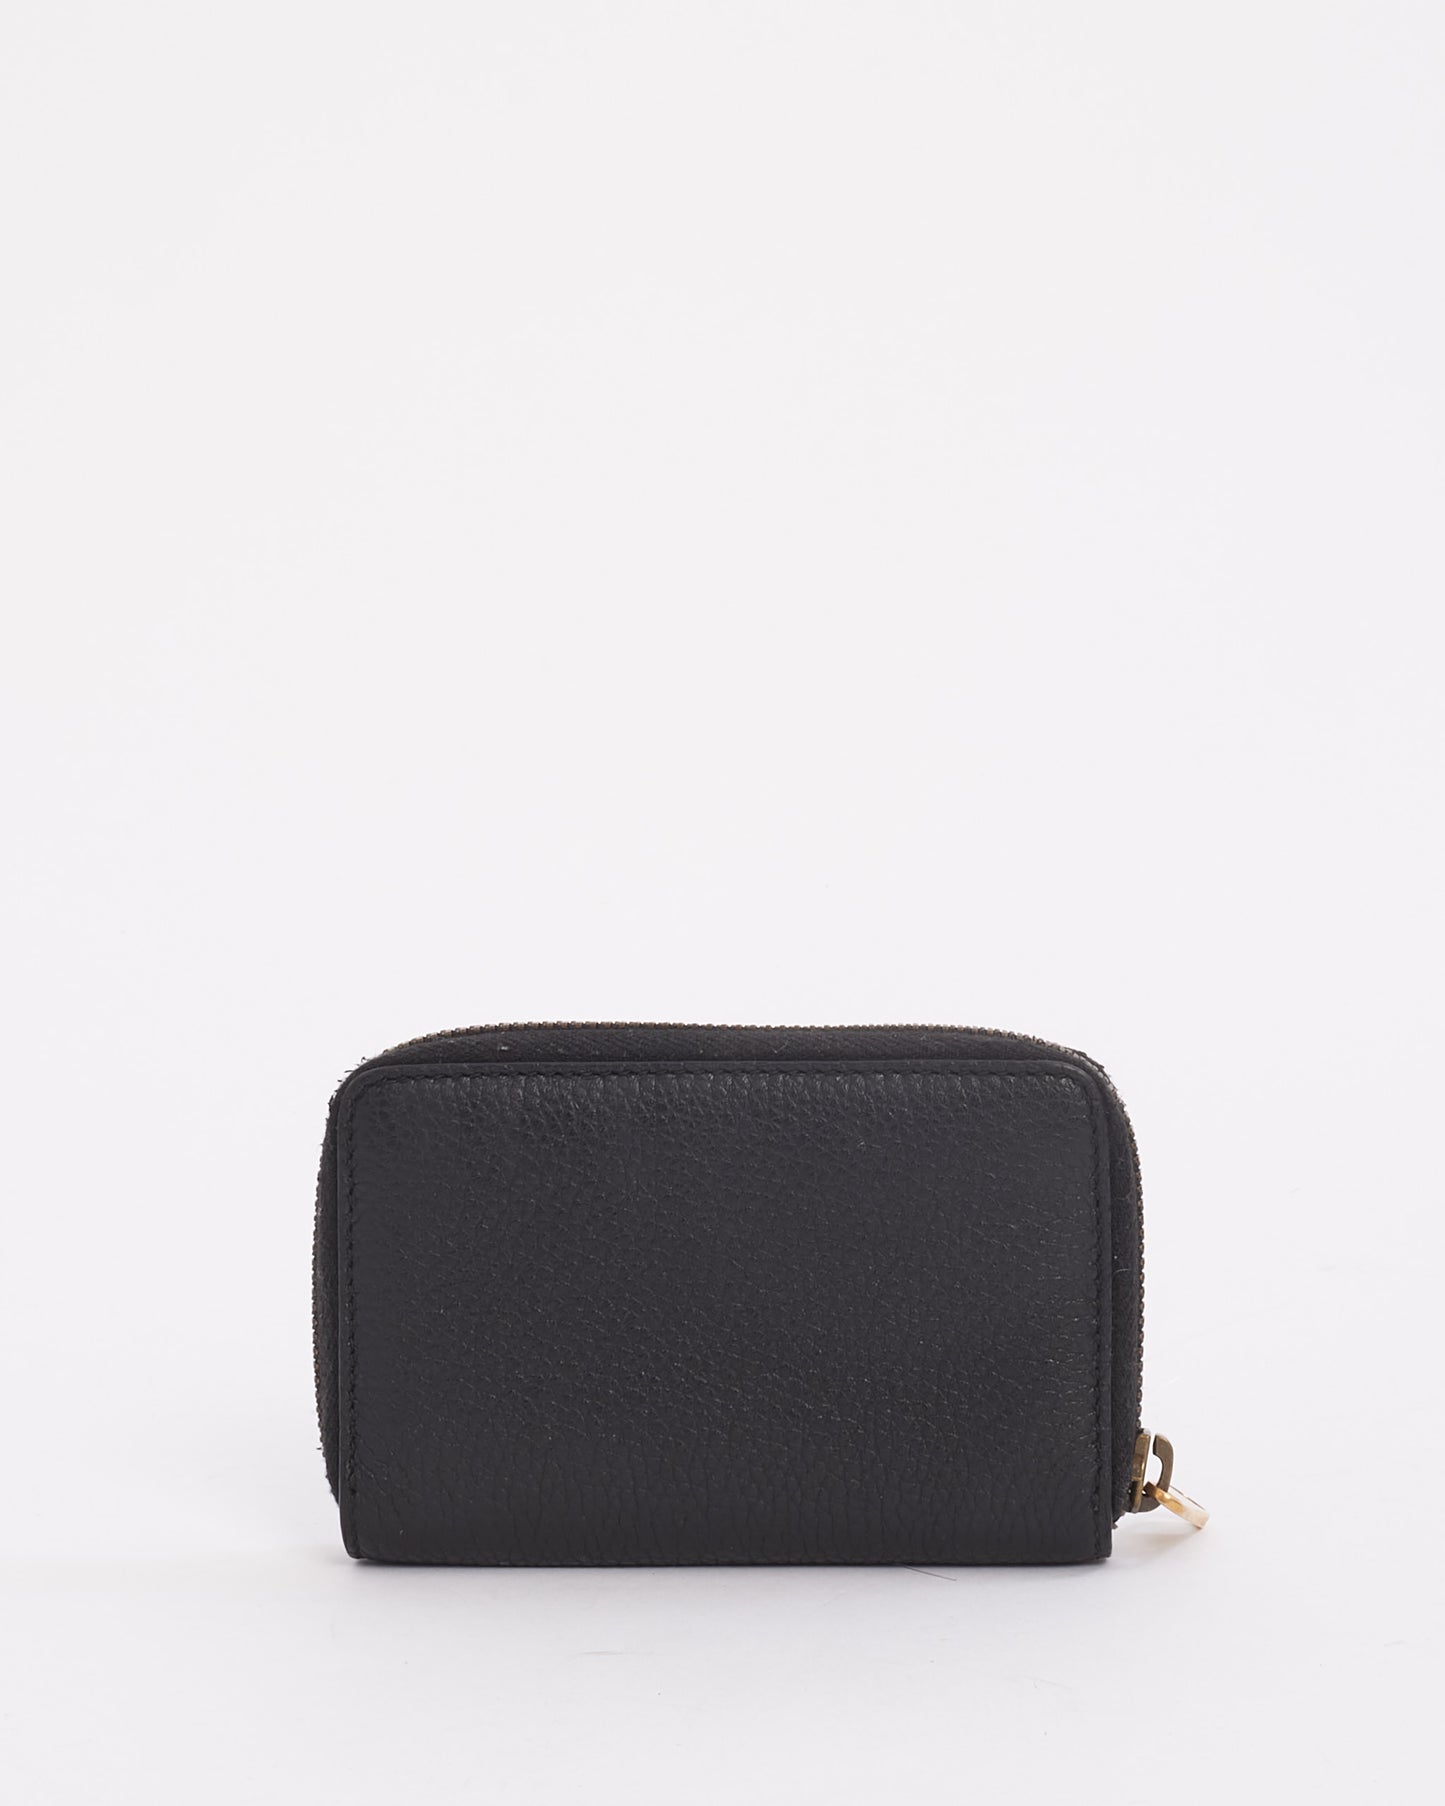 Gucci Black Leather Logo Zip Around Card Case Wallet